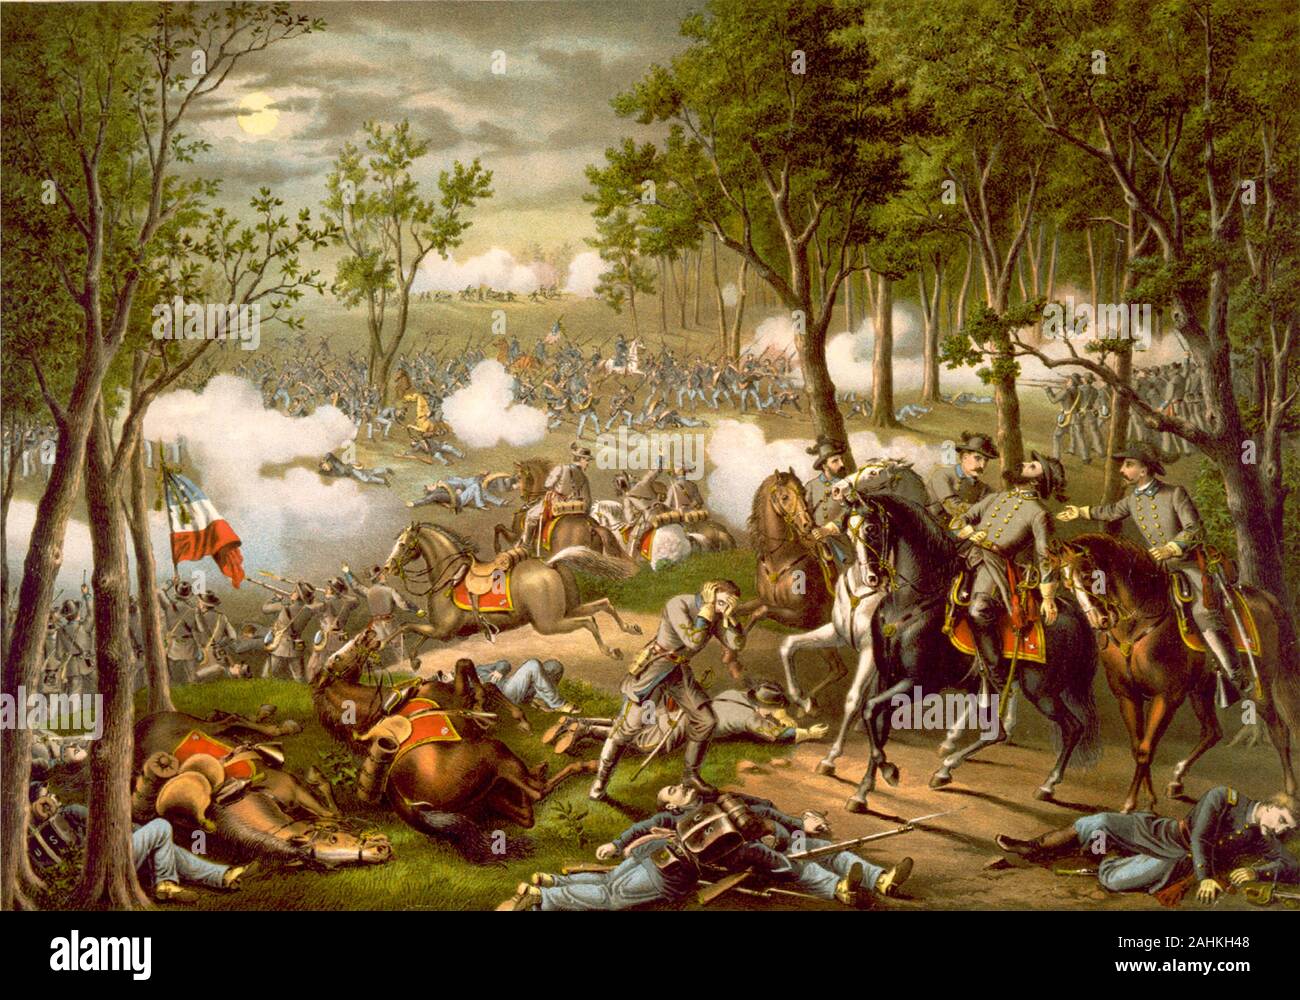 La bataille de Chancellorsville fut une bataille majeure de la guerre civile américaine (1861-1865), et le principal engagement de la campagne de Chancellorsville Banque D'Images